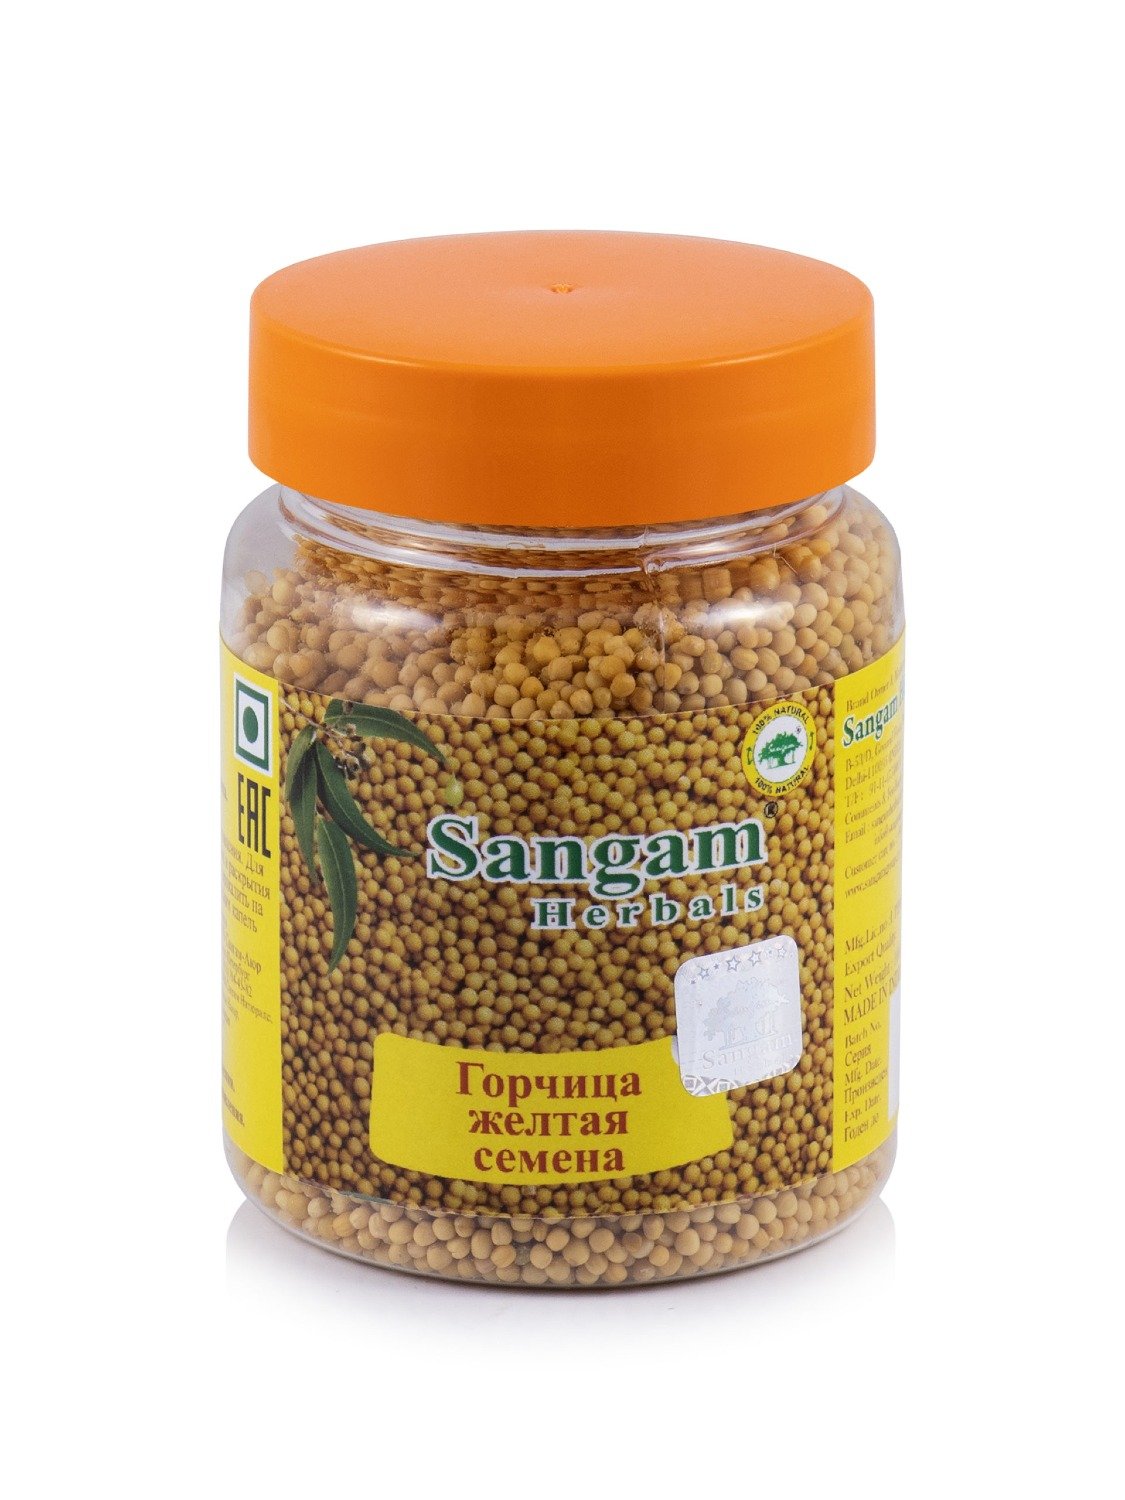 Горчица желтая (семена) Sangam Herbals (100 г). 